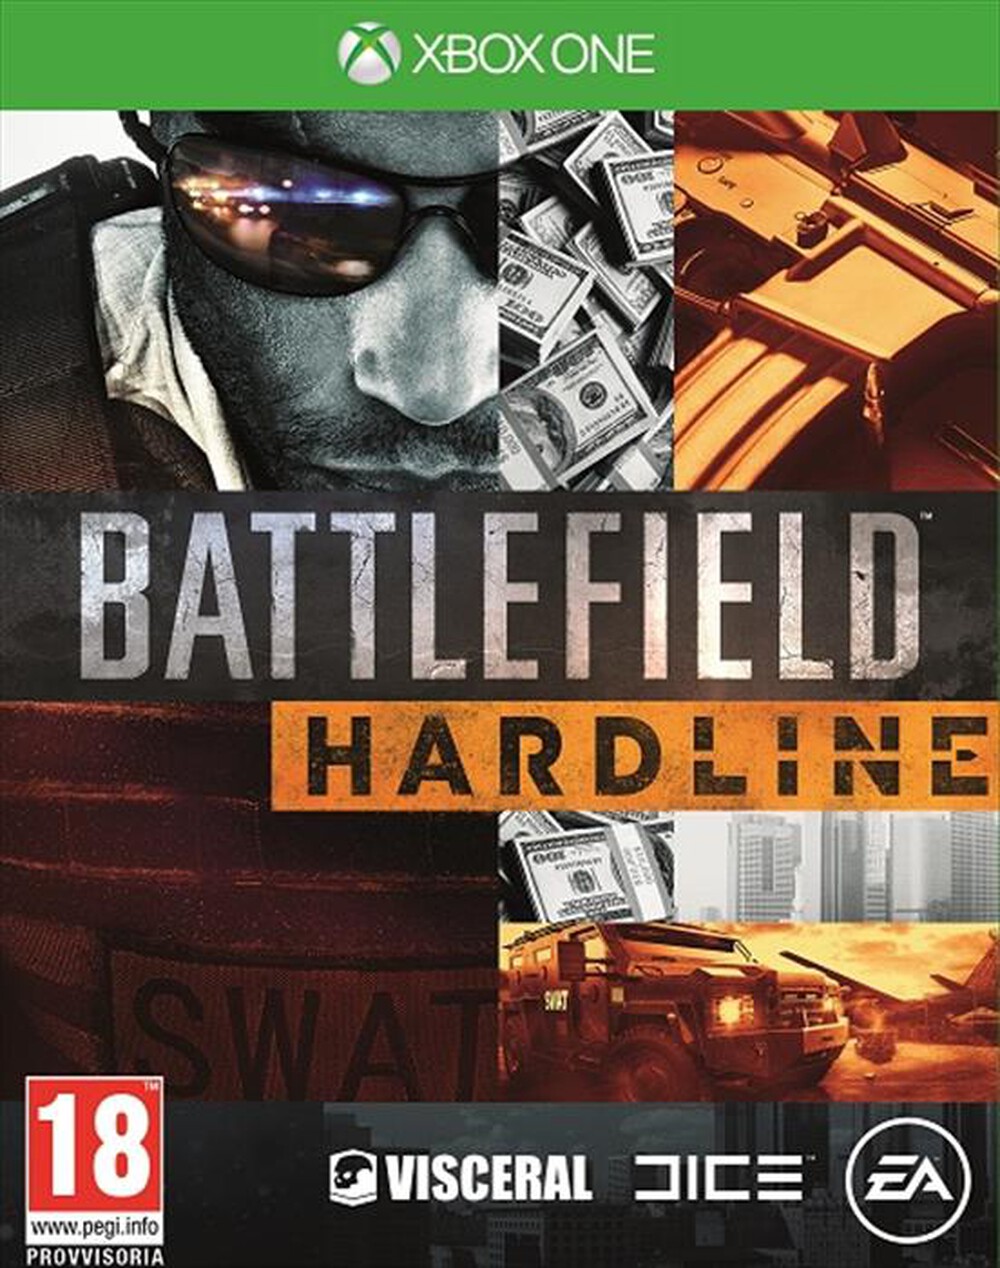 "ELECTRONIC ARTS - Battlefield Hardline XBOX ONE"